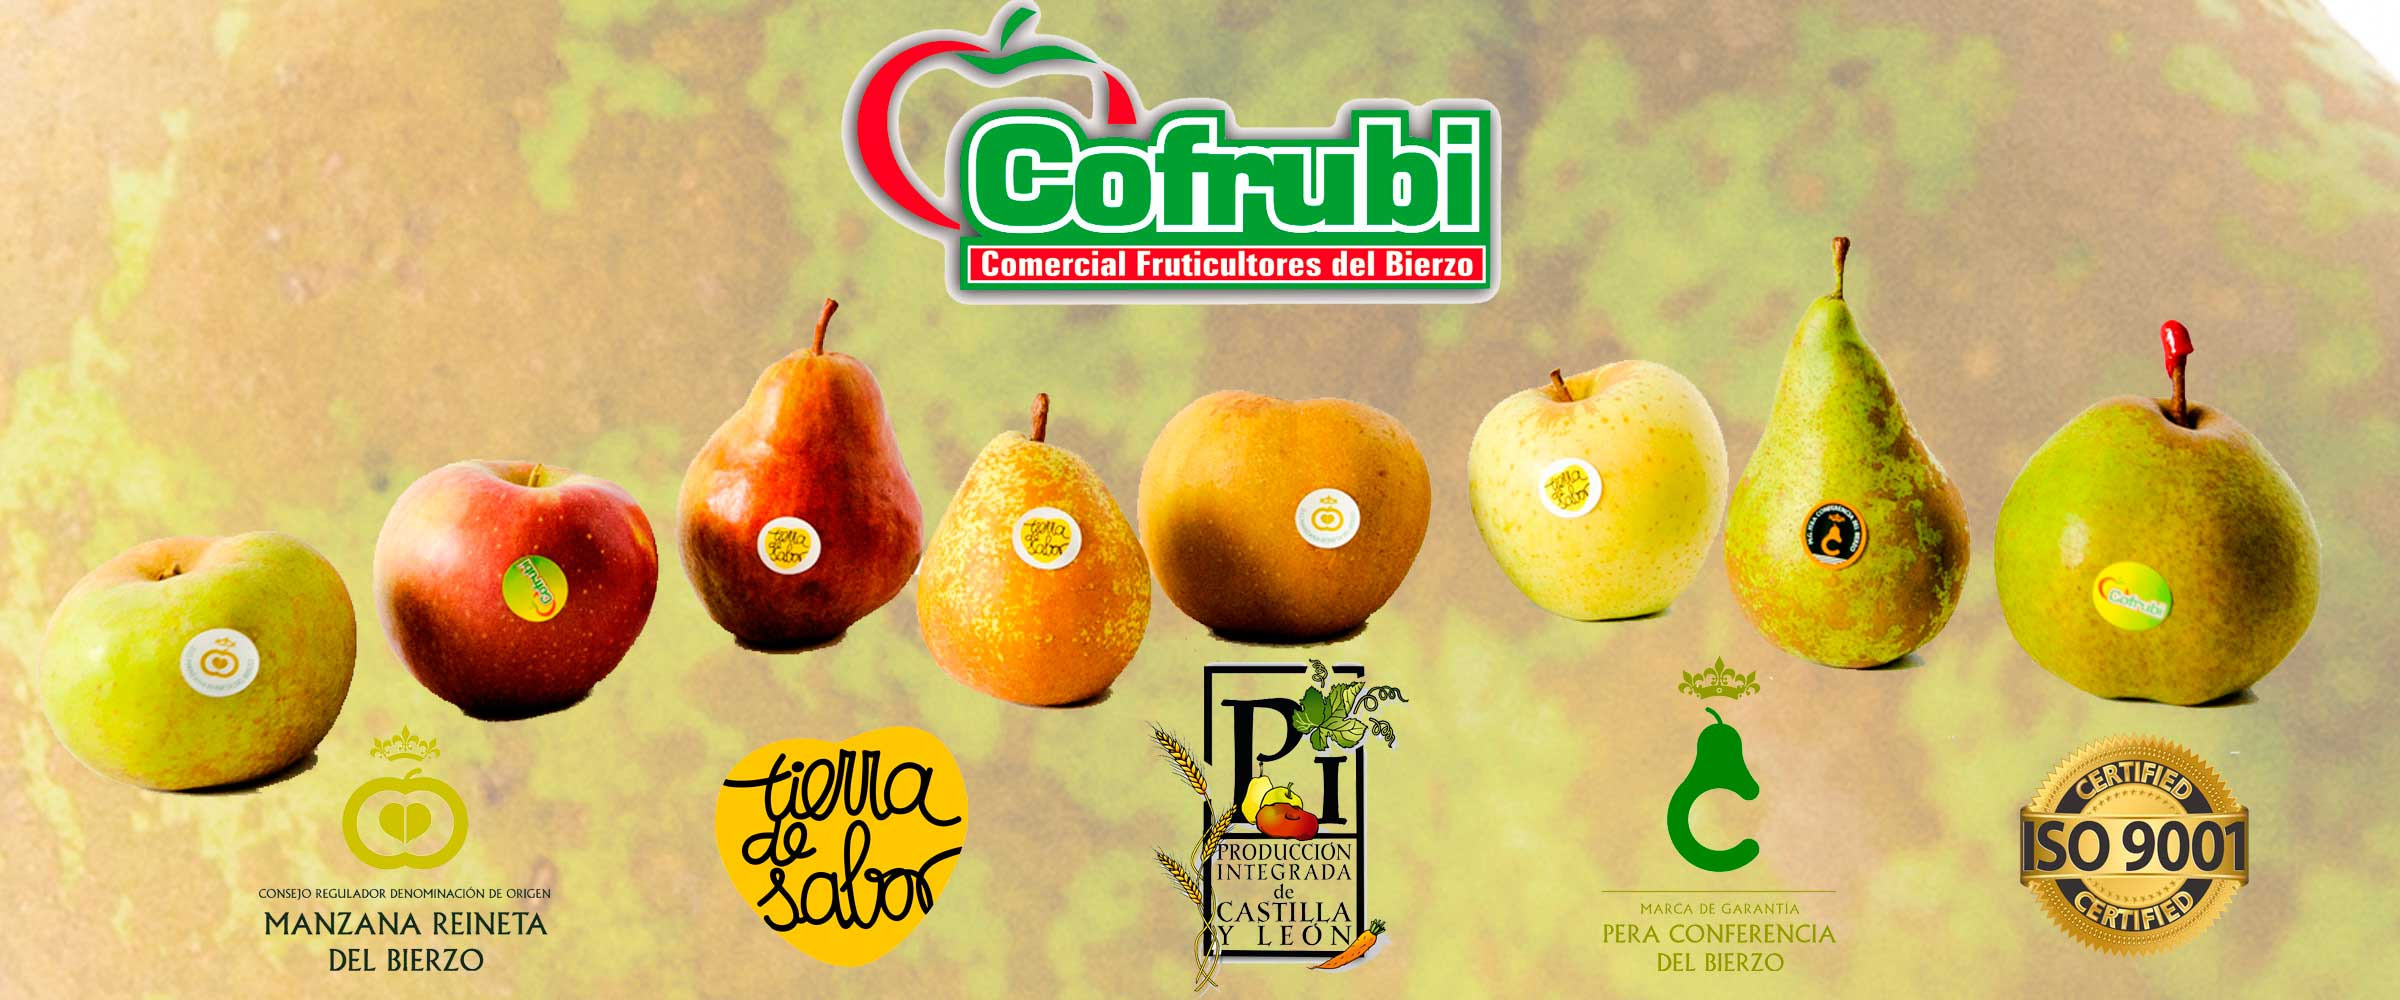 Variedades de Manzanas y Peras Cofrubi. Foto: Cofrubi